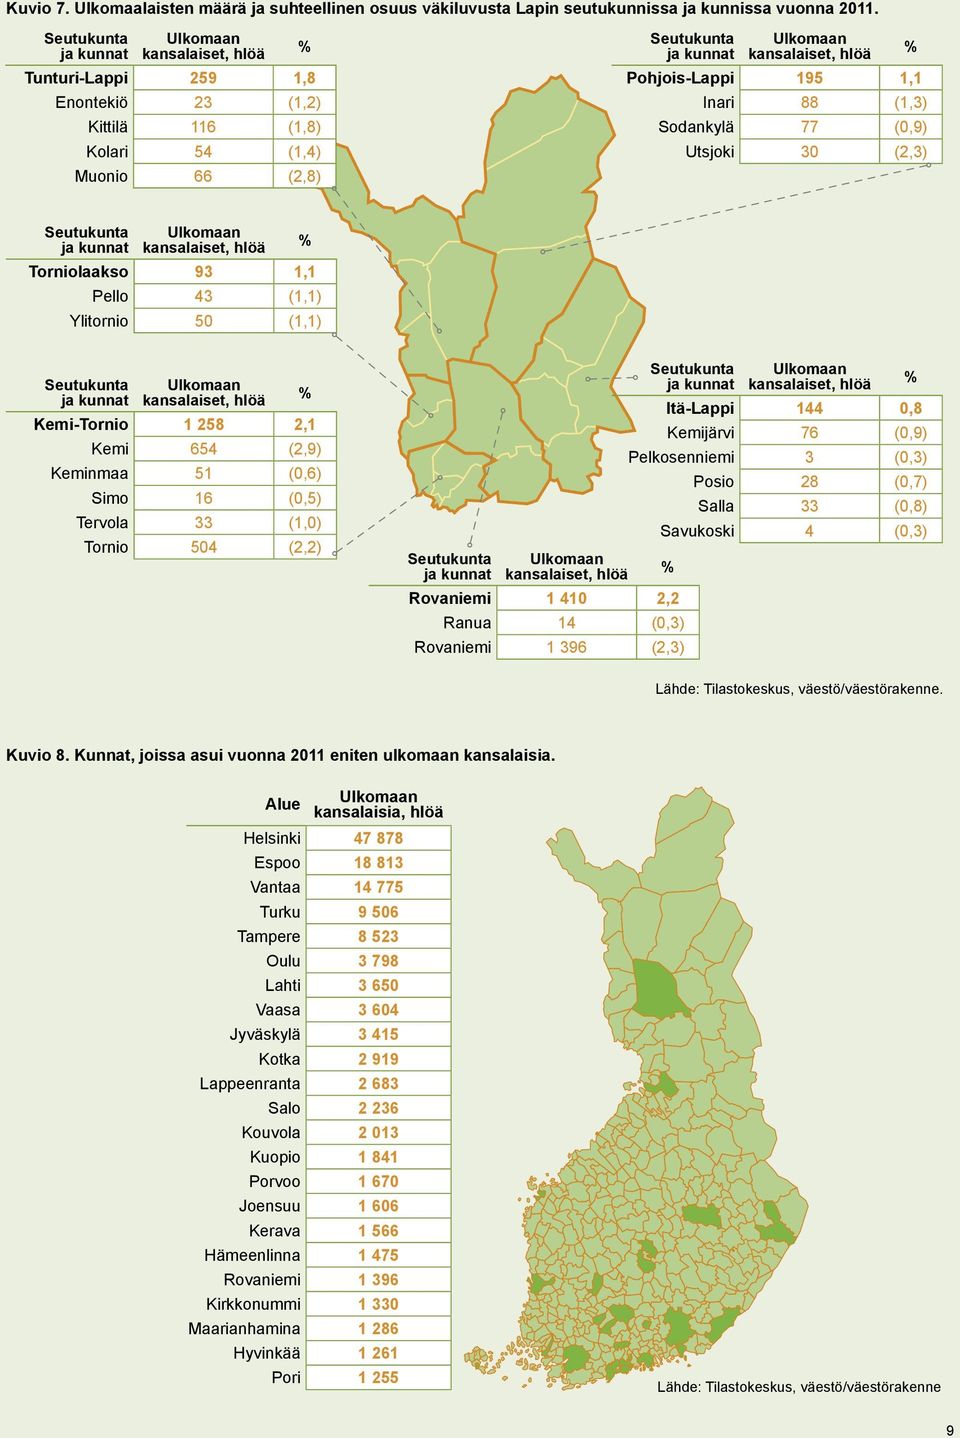 Pohjois-Lappi 195 1,1 % Inari 88 (1,3) Sodankylä 77 (0,9) Utsjoki 30 (2,3) Seutukunta ja kunnat Ulkomaan kansalaiset, hlöä Torniolaakso 93 1,1 % Pello 43 (1,1) Ylitornio 50 (1,1) Seutukunta ja kunnat